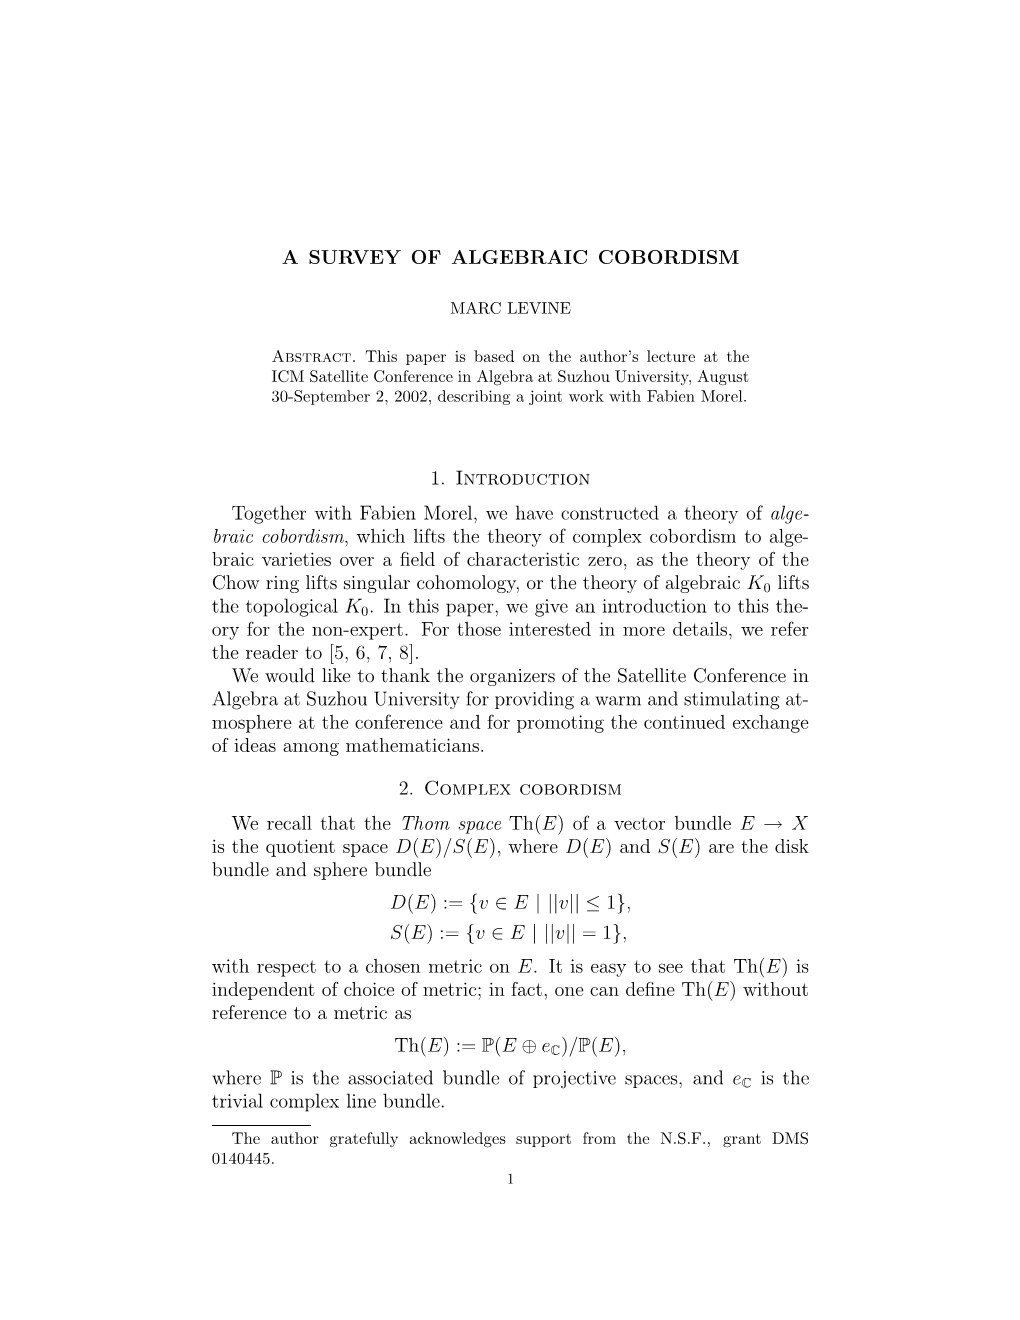 A Survey of Algebraic Cobordism